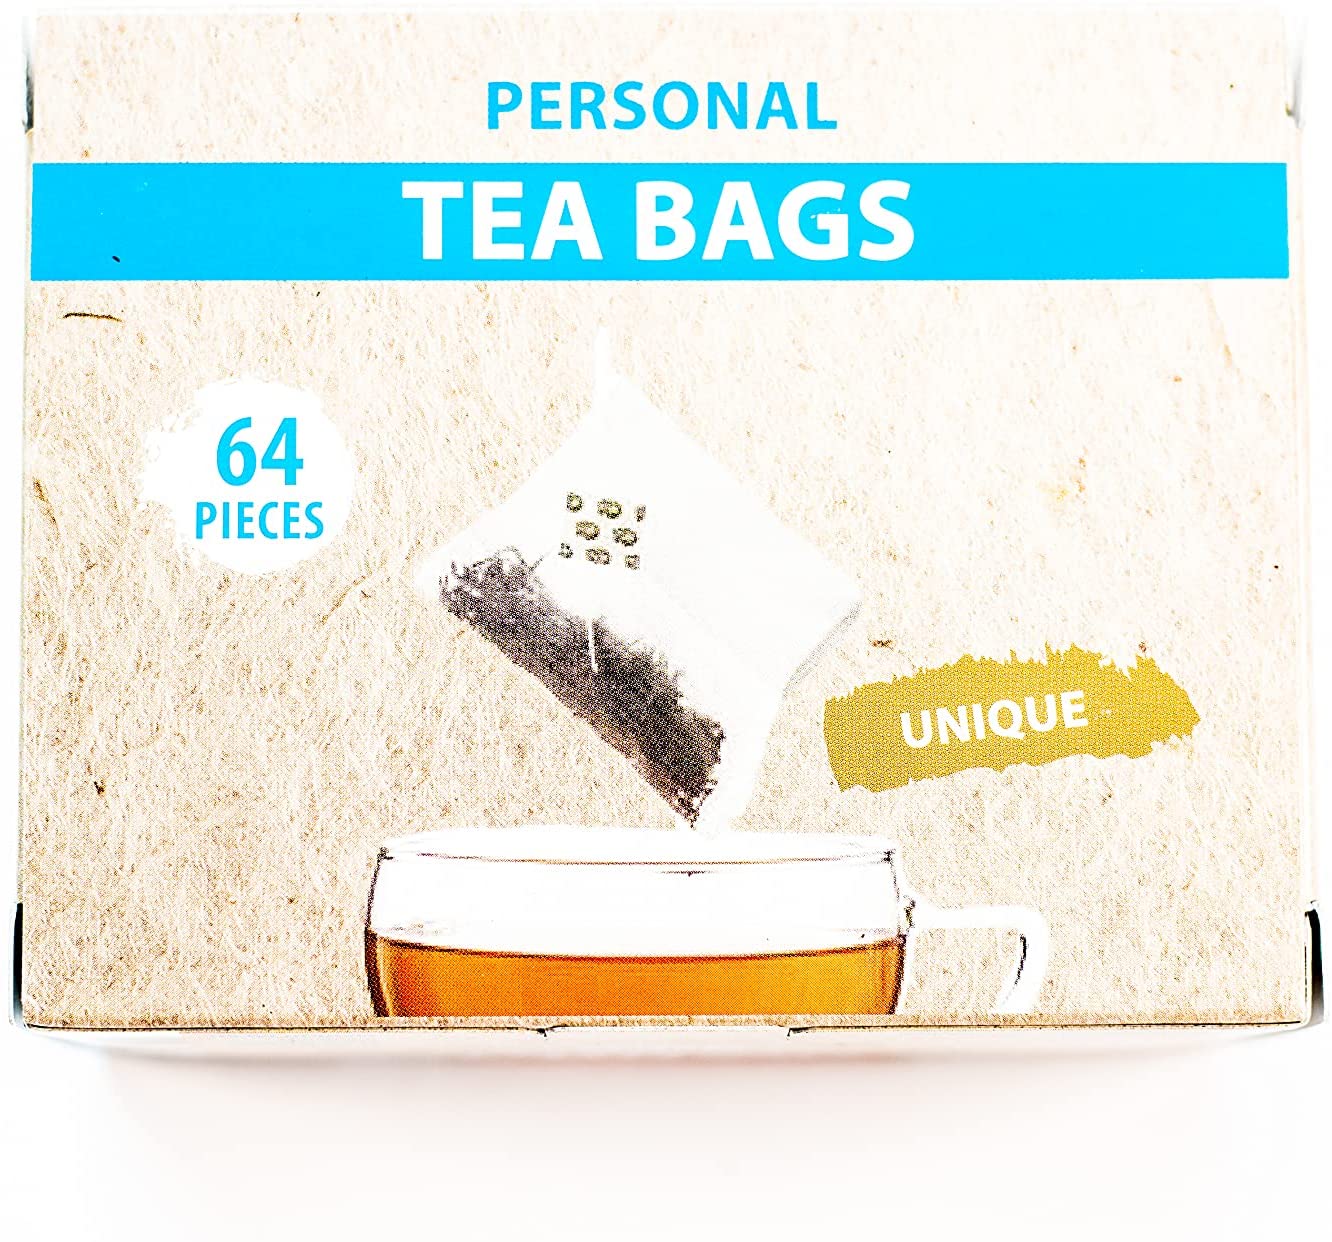 Personal Tea Bags 64 Pieces Premium Quality by Petali Tea Tools Tea Accessories pentru un ceai sau mai multe ceaiuri mereu noi pentru ca sunt sanatoase